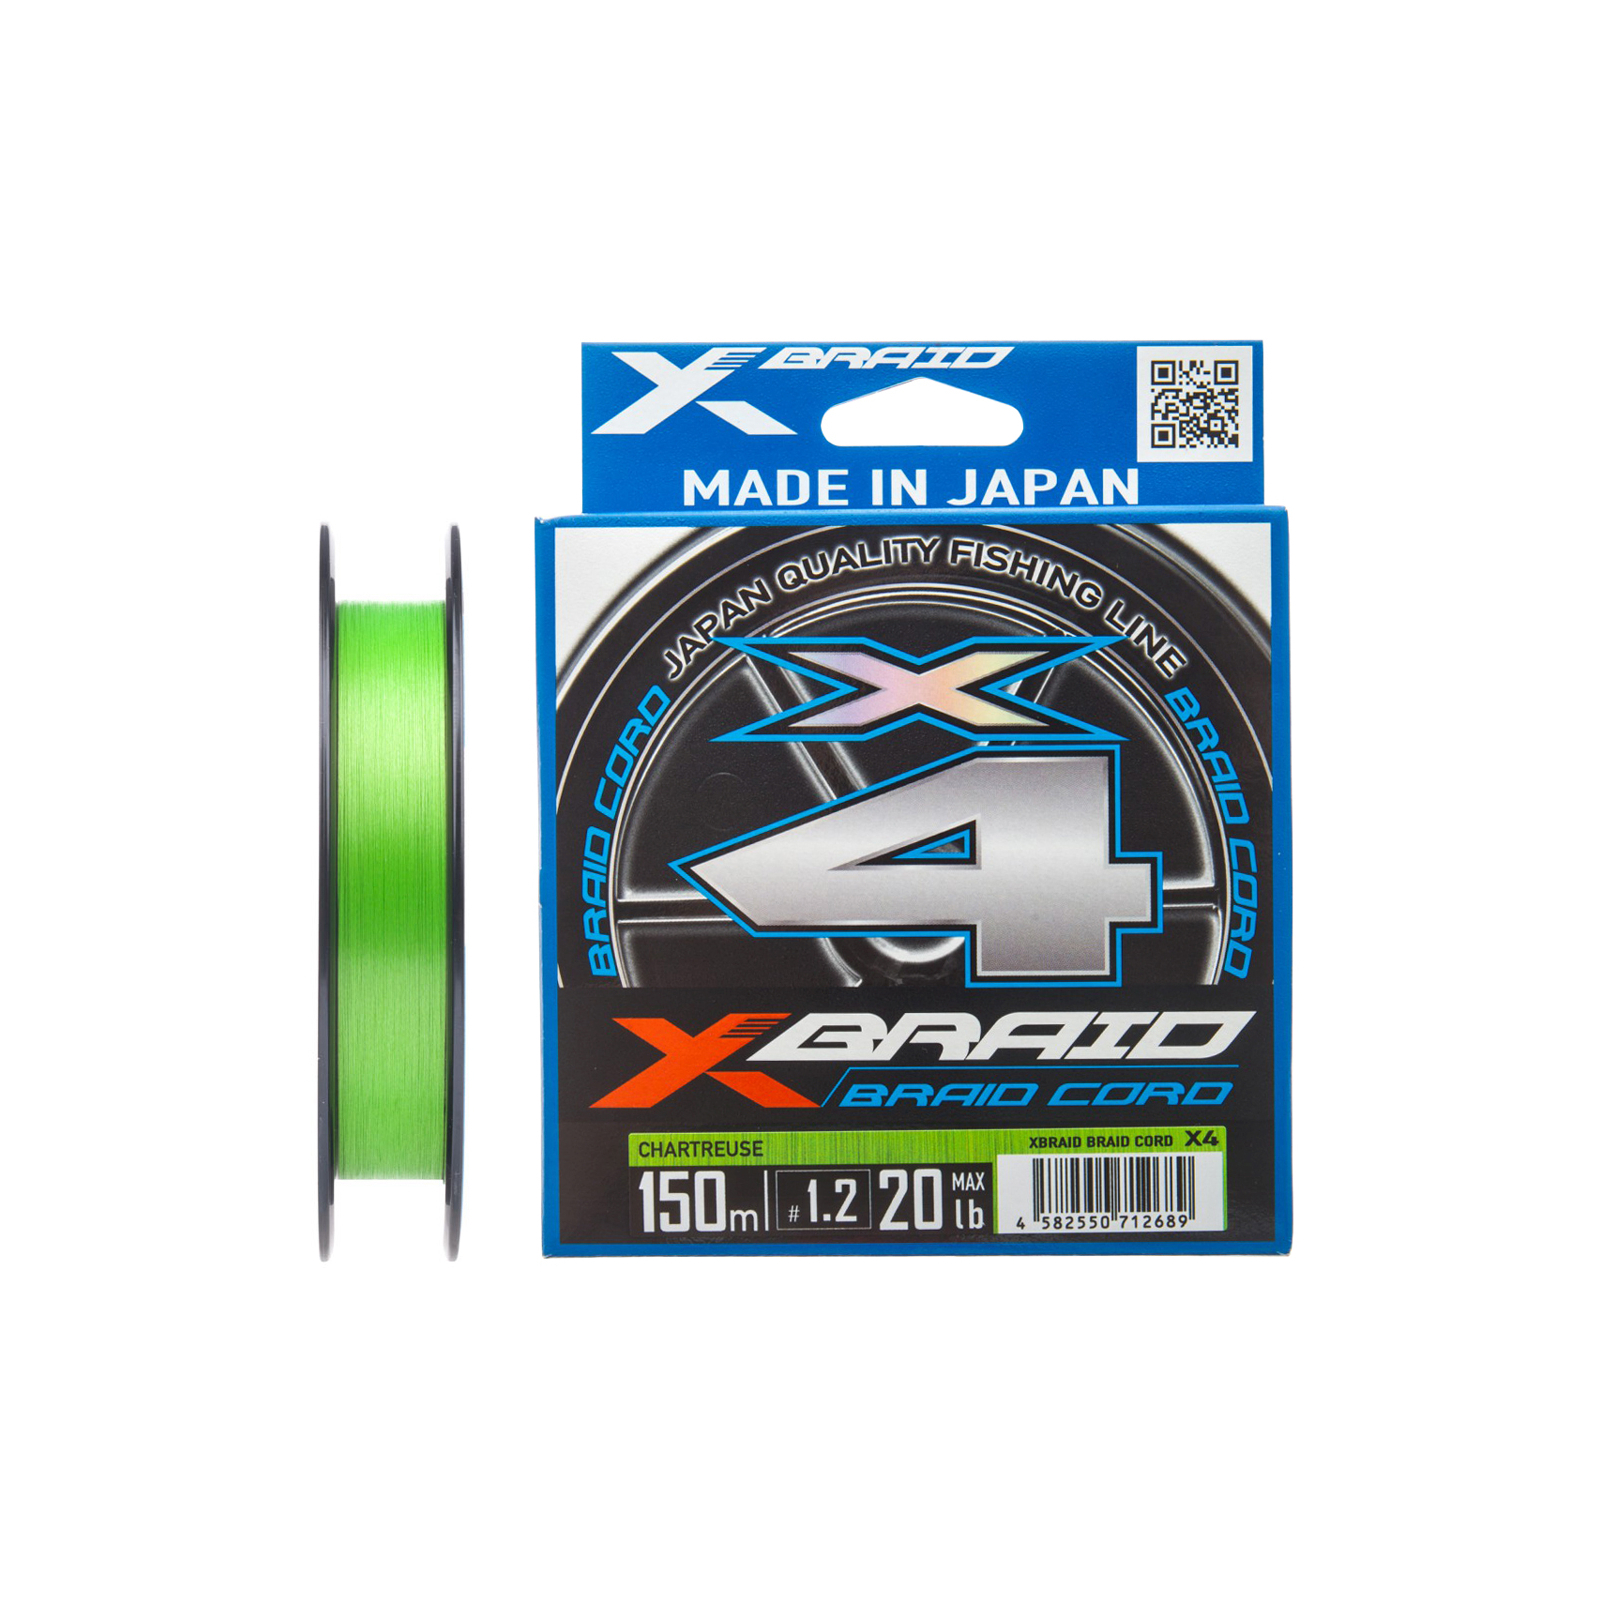 Шнур YGK X-Braid Braid Cord X4 150m 1.0/0.165mm 18lb/8.1kg (5545.03.13)